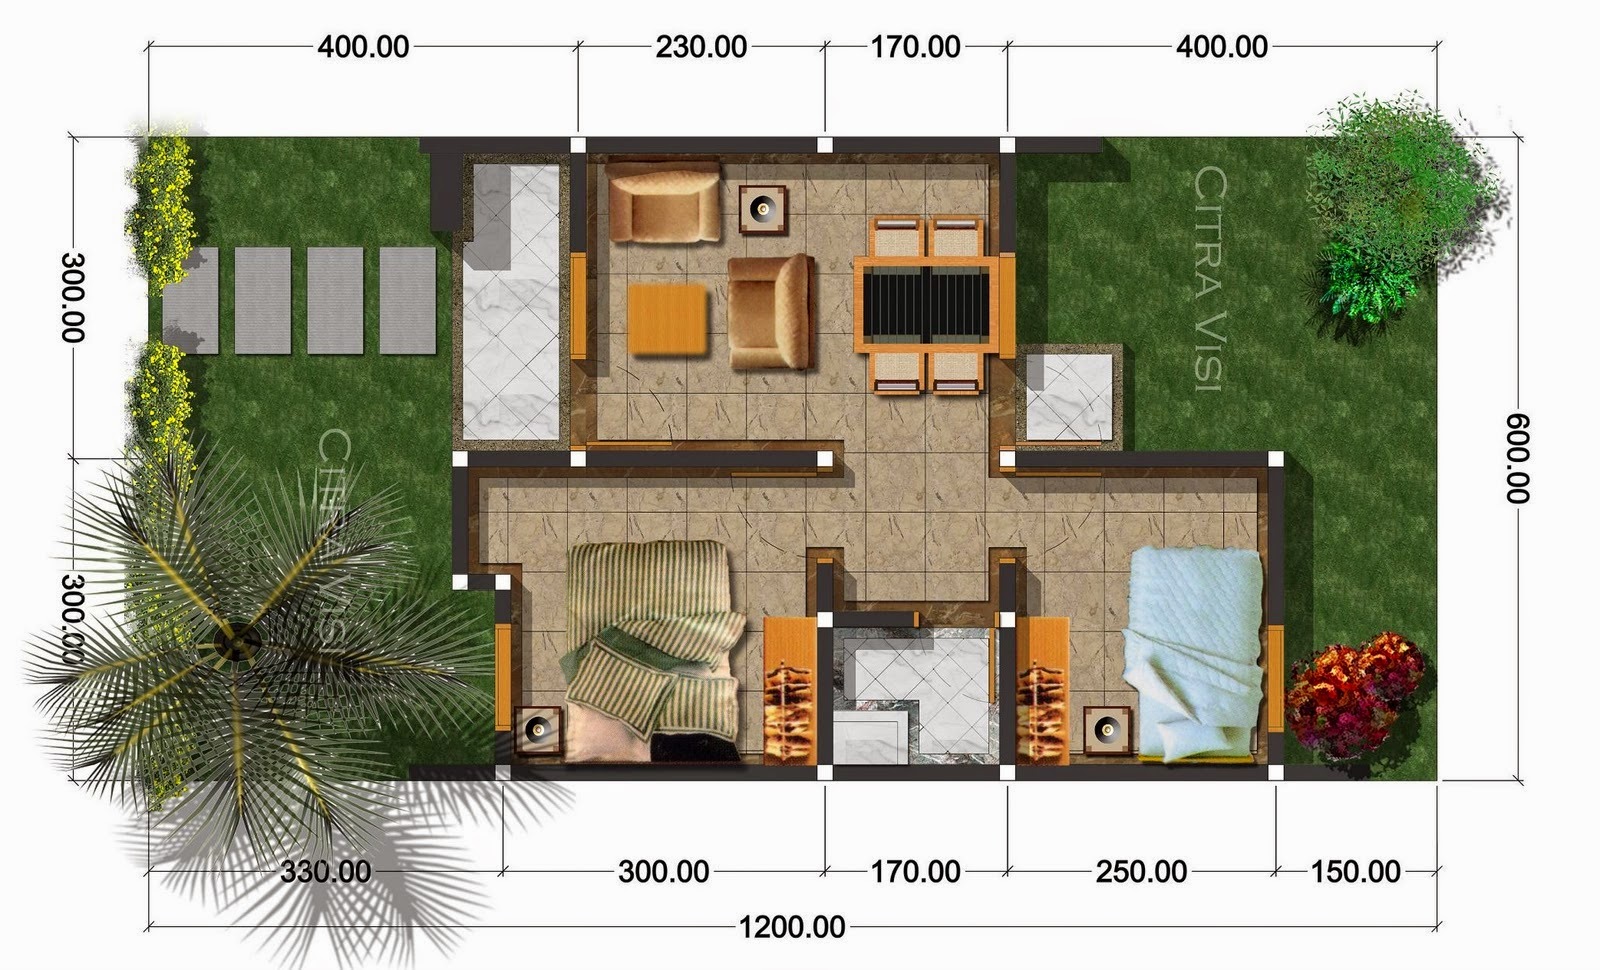 60 Desain Rumah Minimalis Luas Tanah 60 Meter Desain Rumah